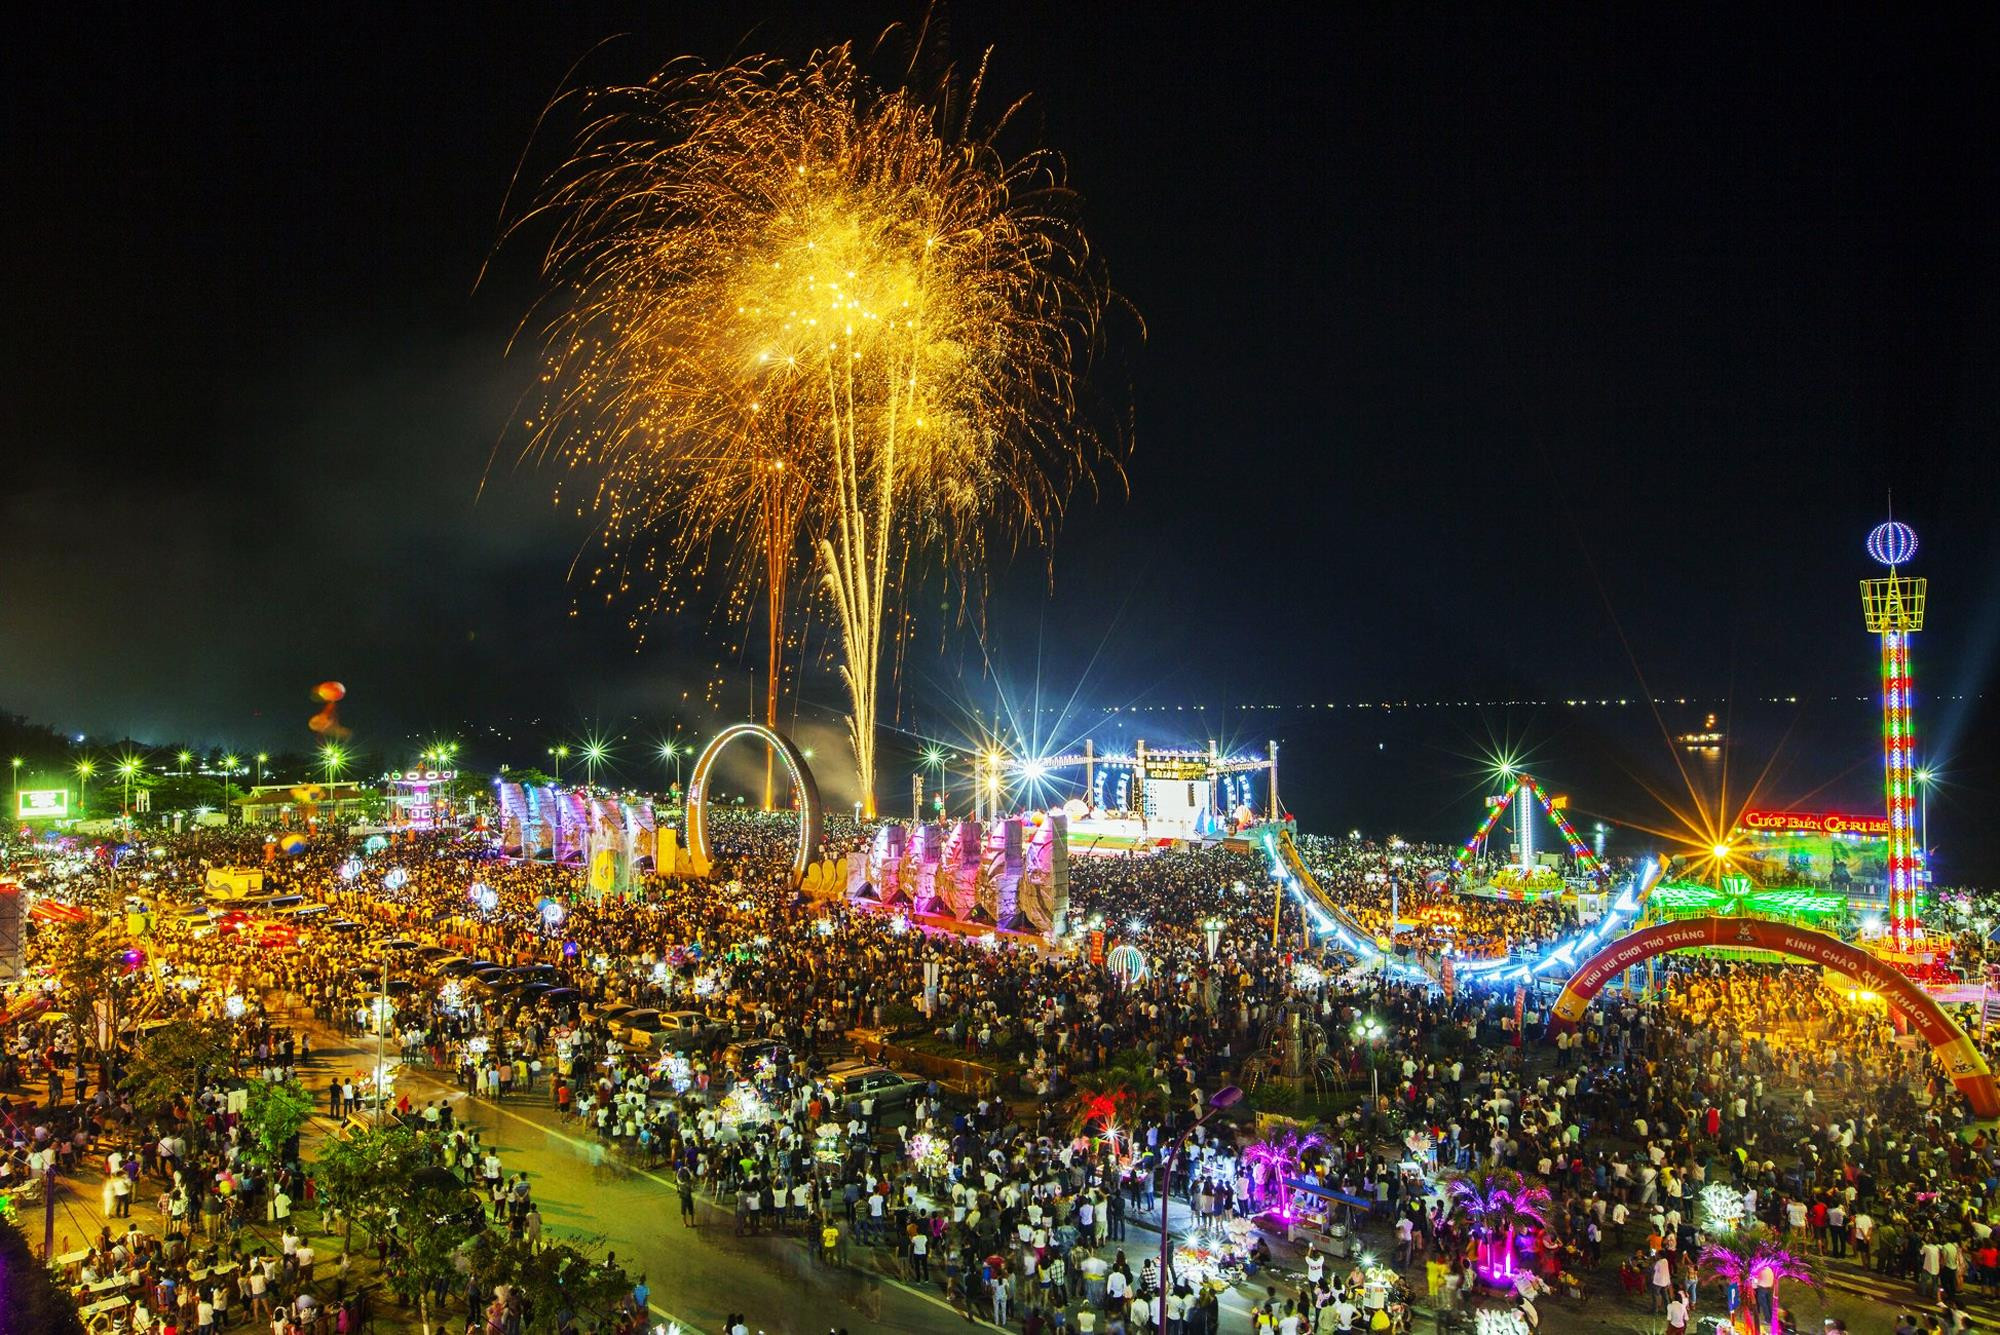 Đêm khai mạc Lễ hội du lịch Cửa Lò 2019, tỉnh Nghệ An sẽ bắn pháo hoa từ 15-20 phút. Ảnh: Tư liệu